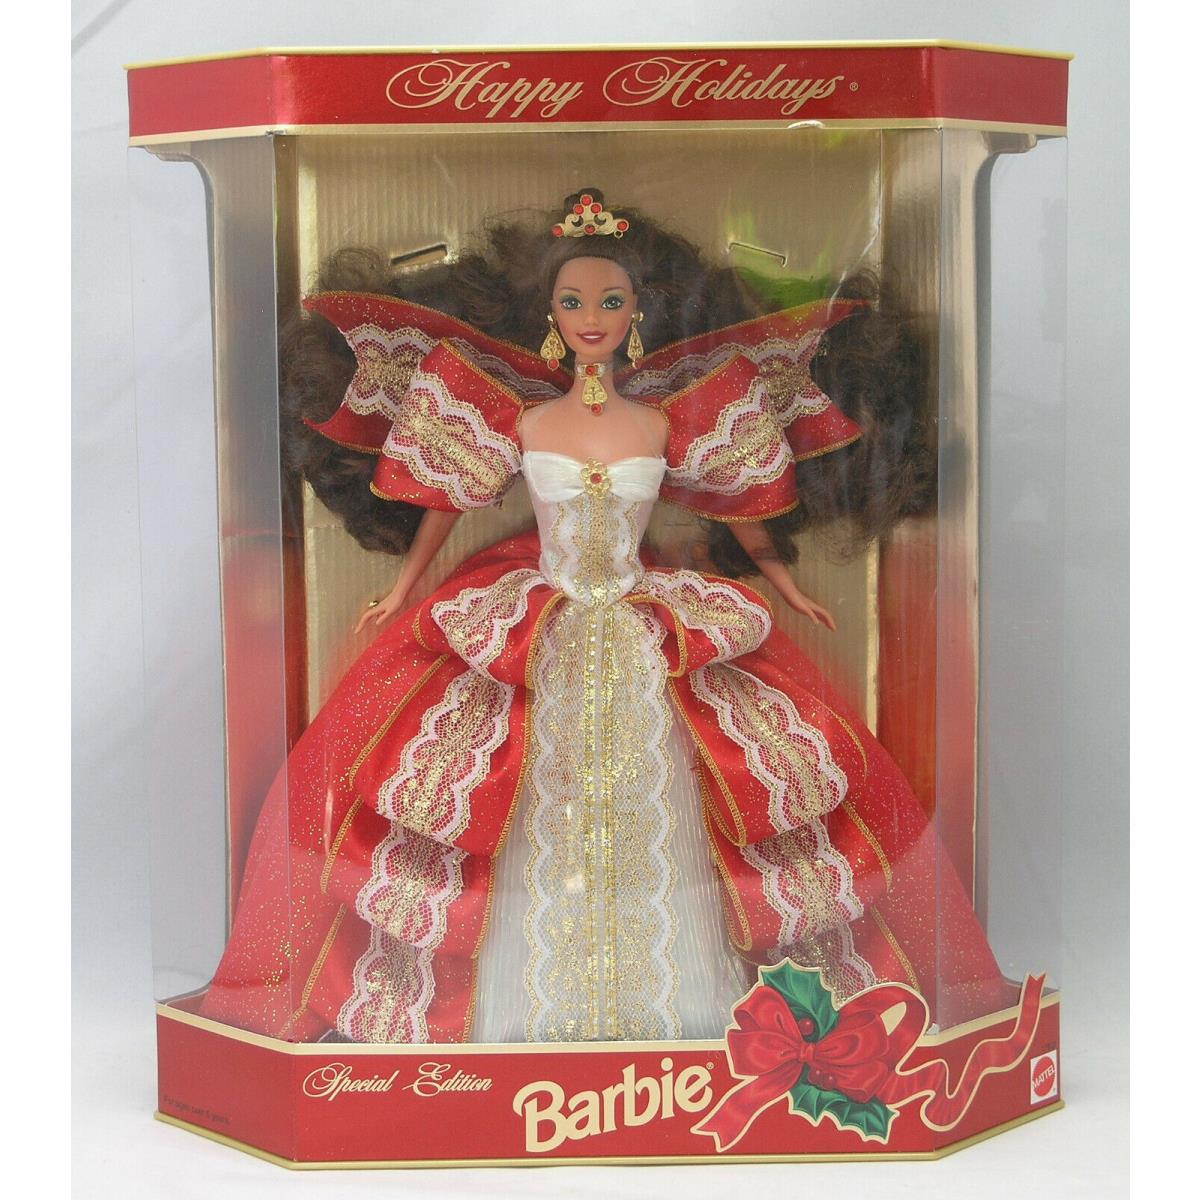 Happy Holidays 1997 Barbie Doll 17832 Nrfb